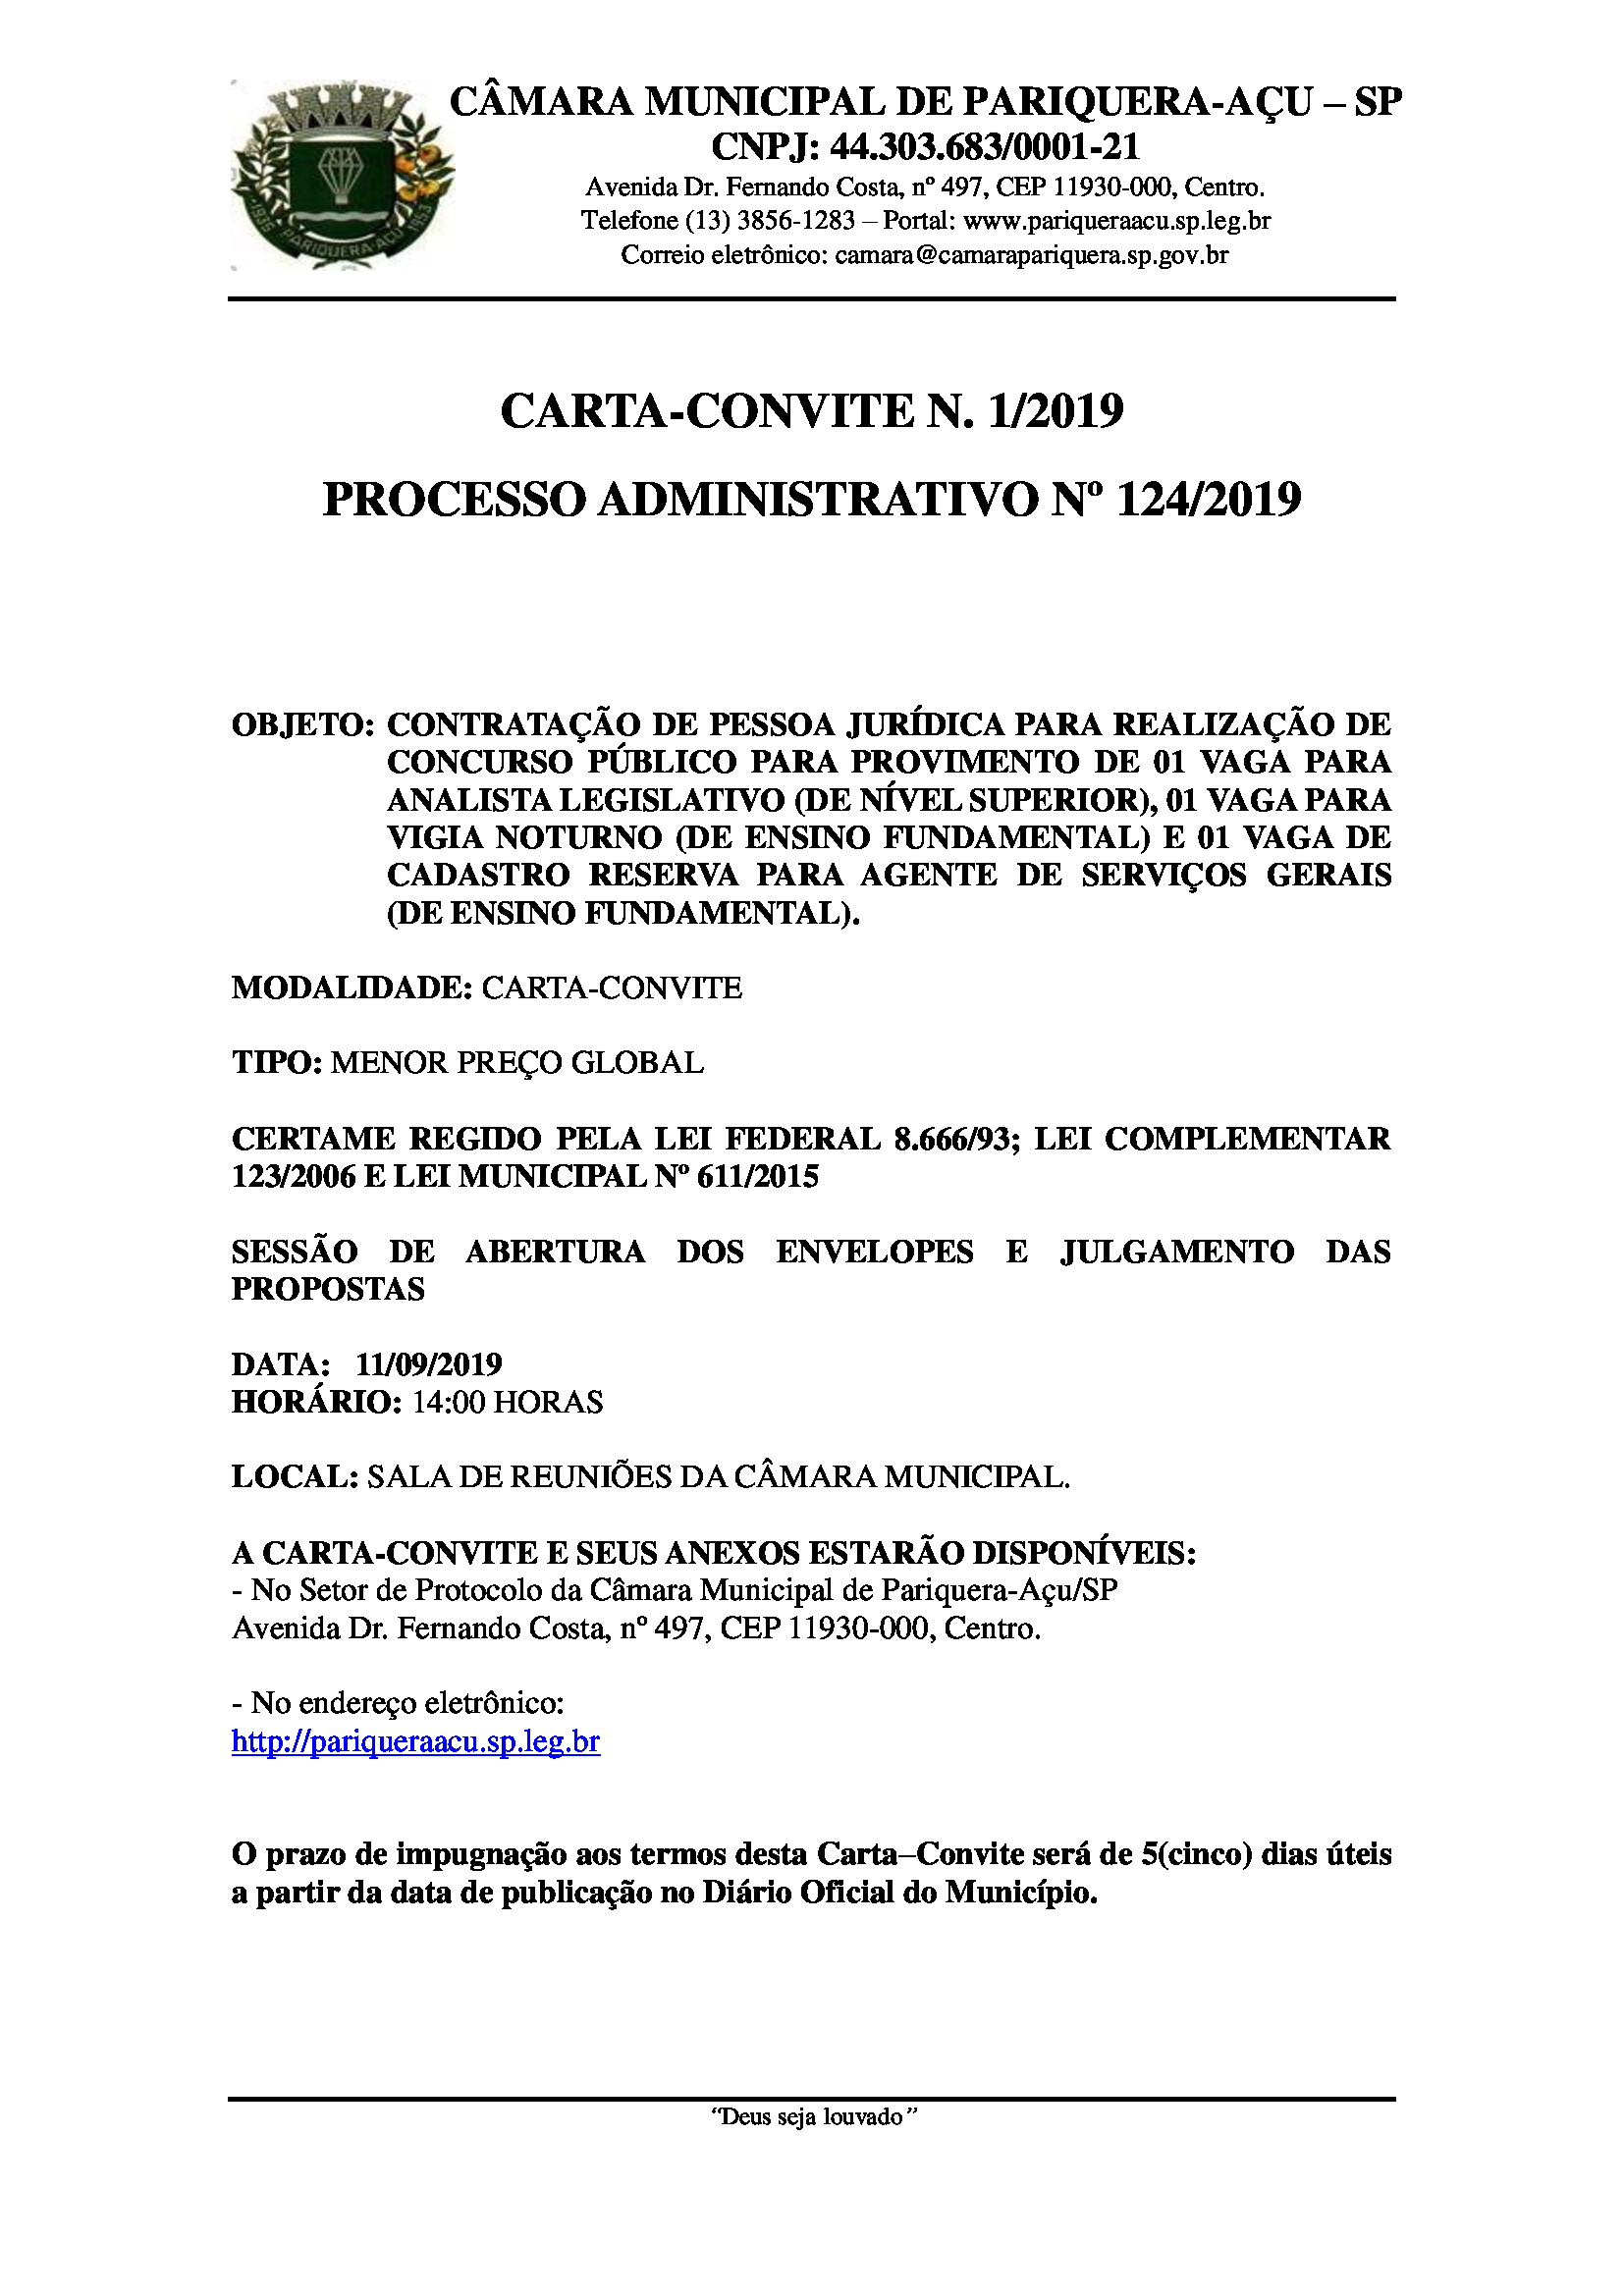 Termo de Homologação da Carta-Convite nº 1/2019.